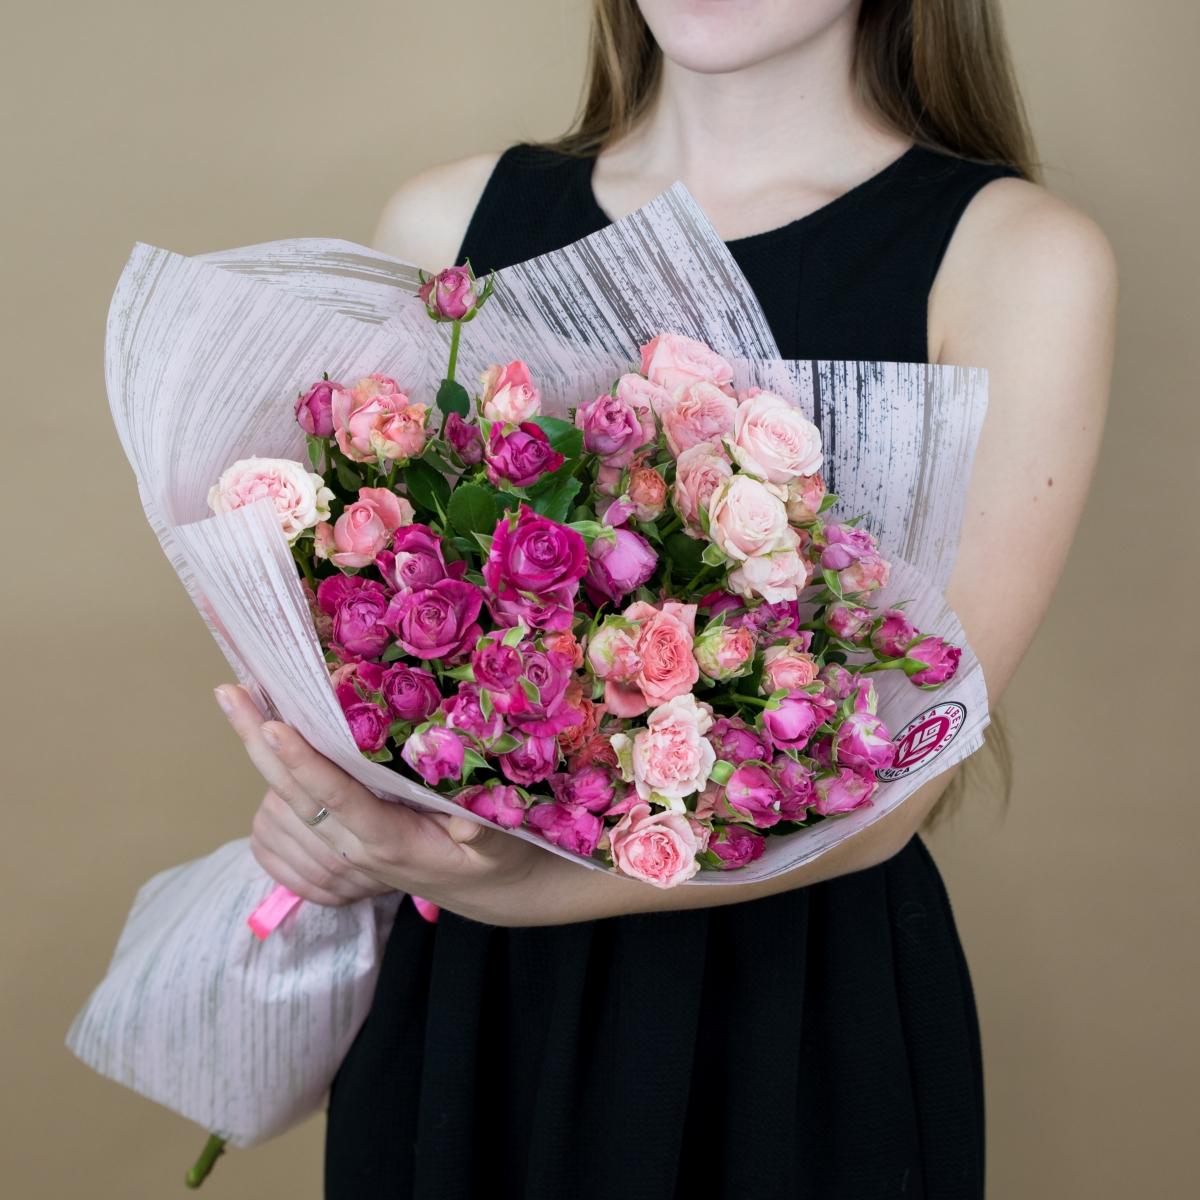 Розы кустовые розовые артикул букета   4350